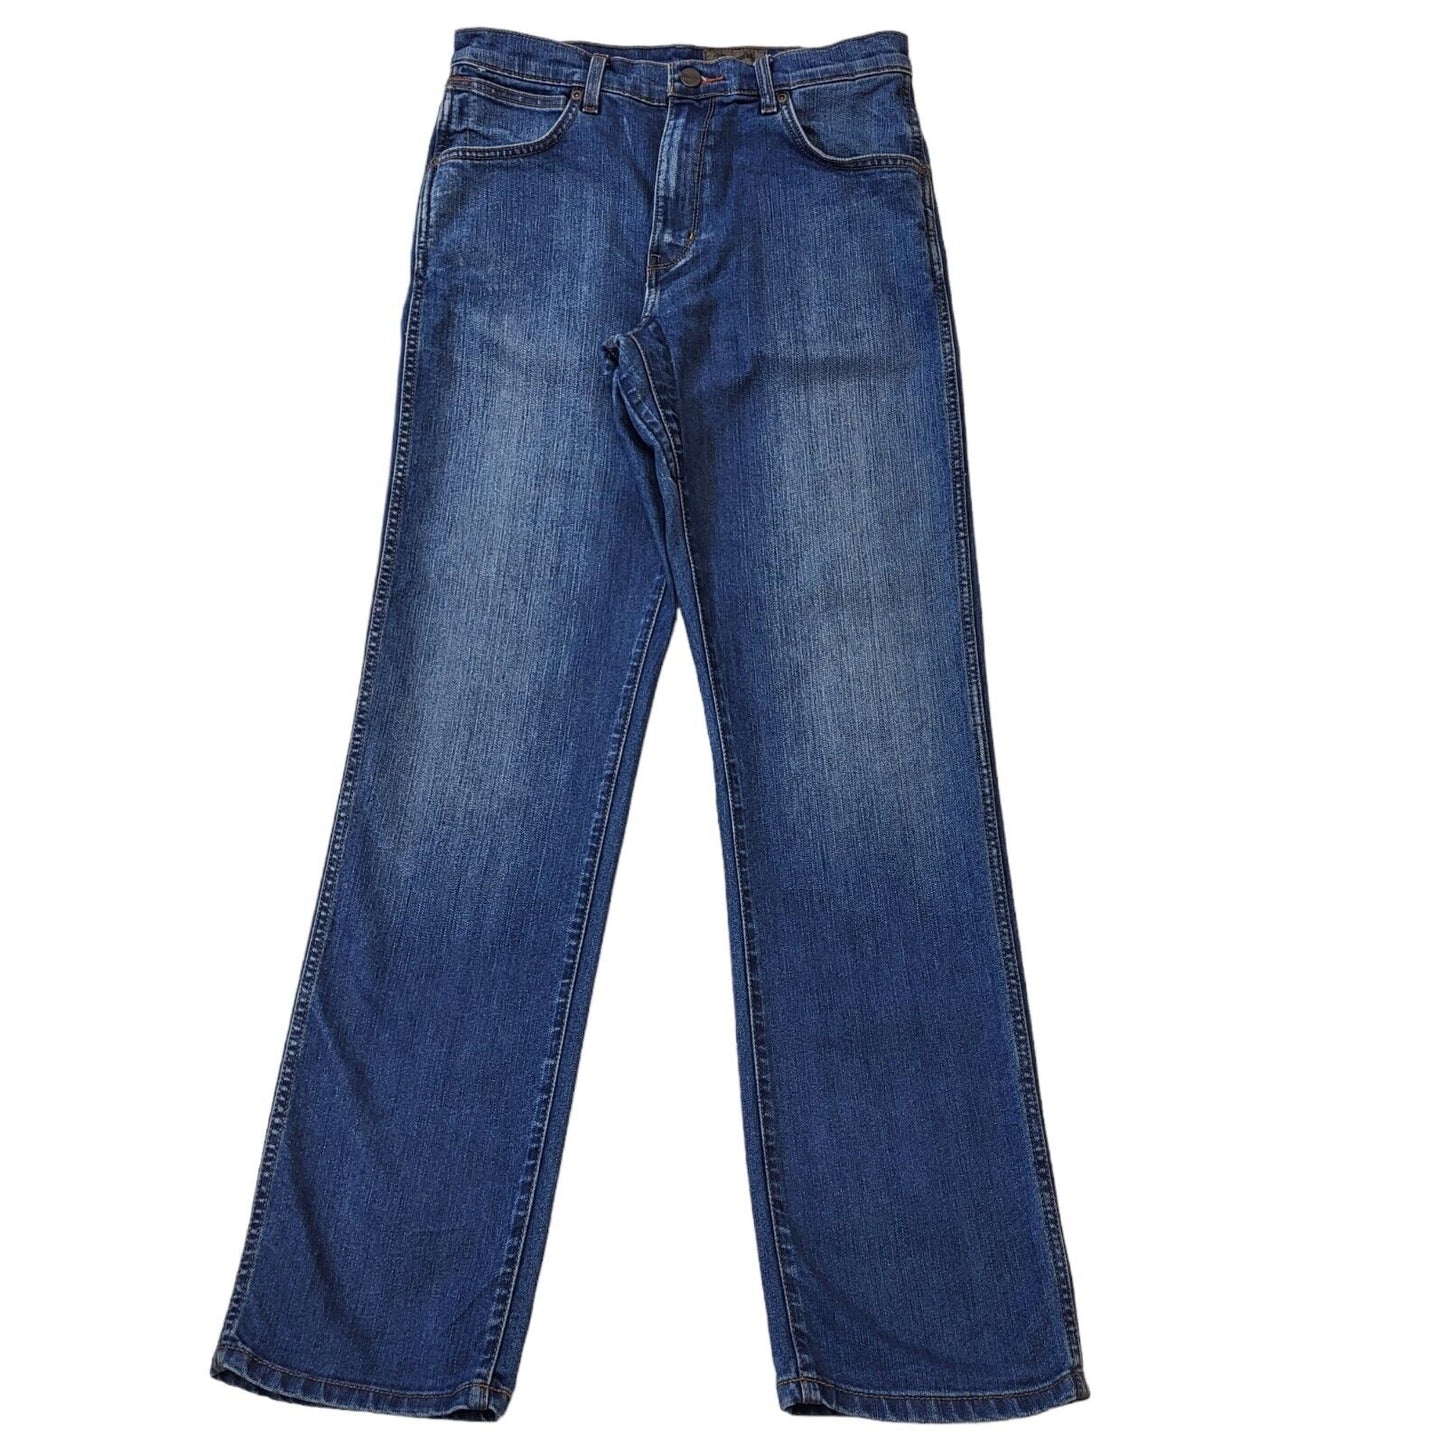 Wrangler Jeans (M)